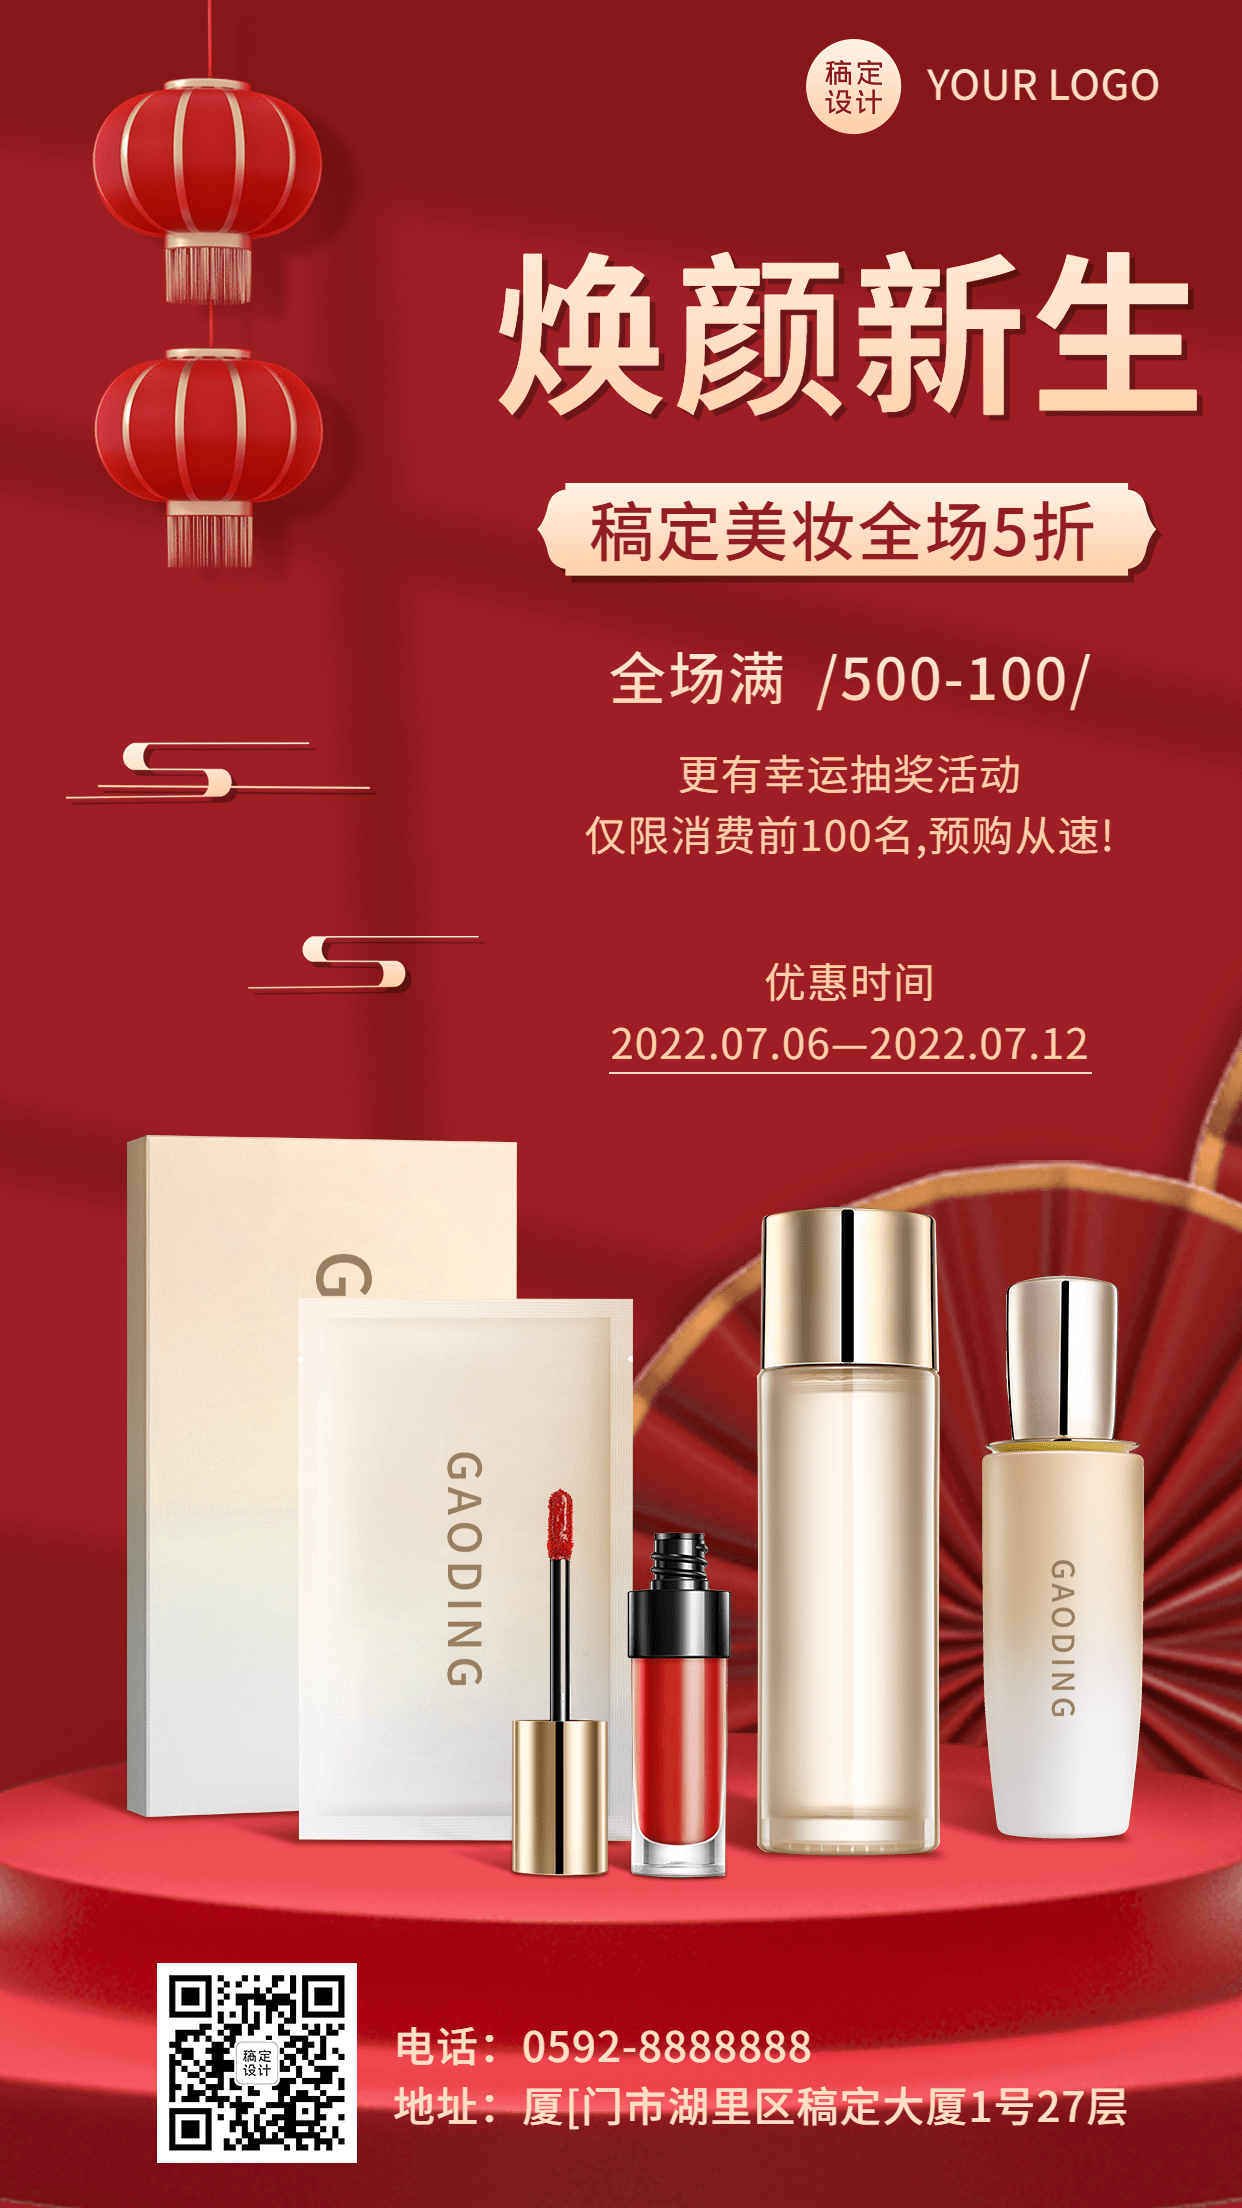 微商美容美妆大促产品营销优惠活动促销喜庆中国风手机海报预览效果